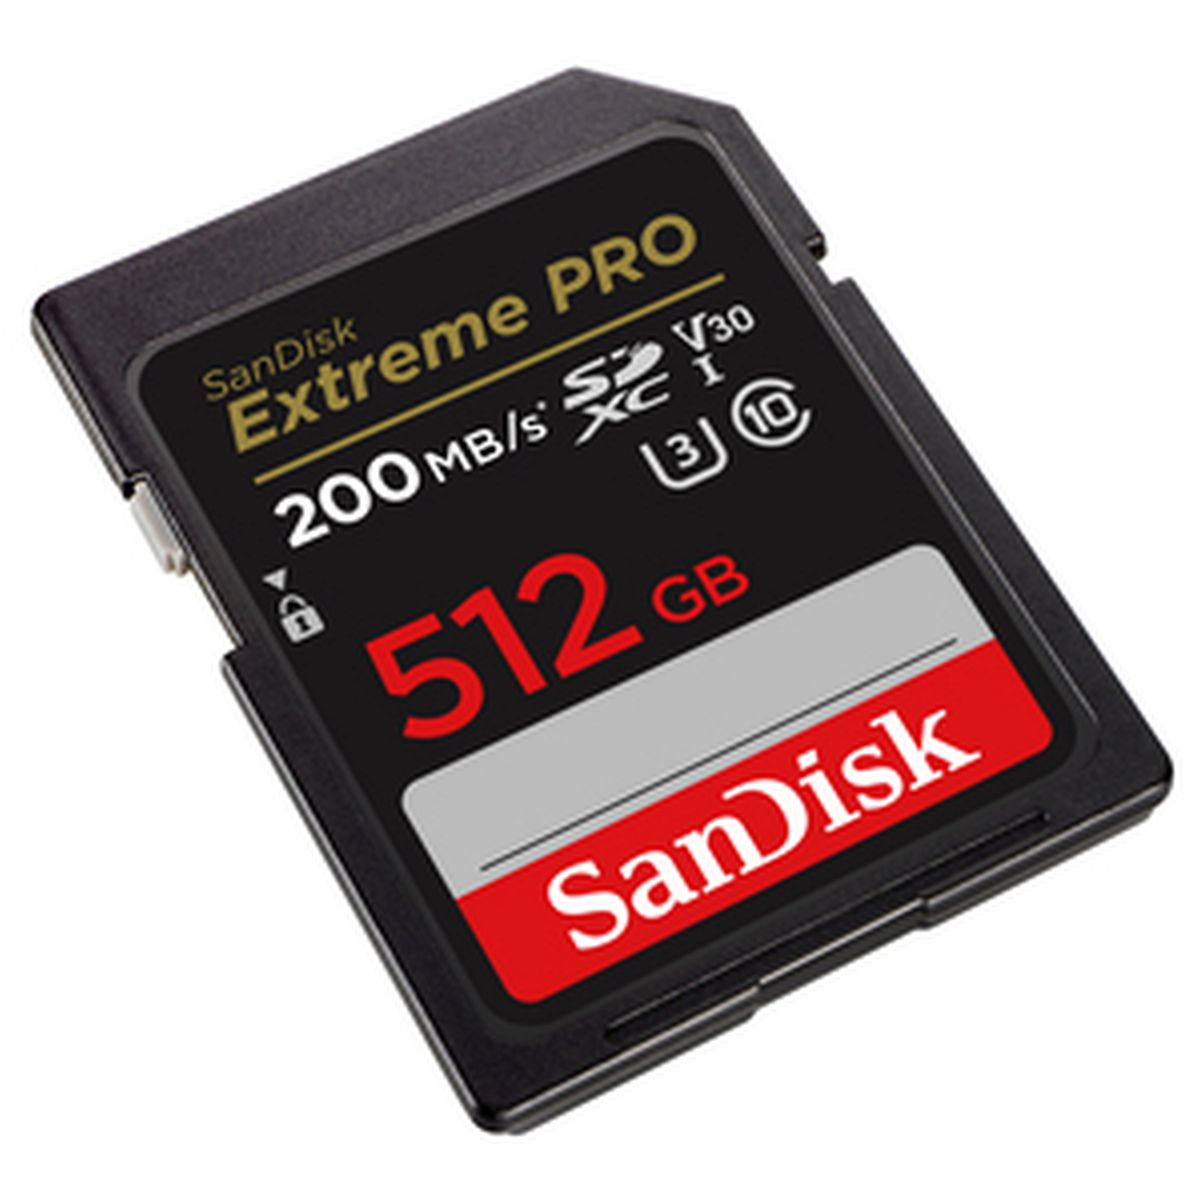 SanDisk 512 GB SDXC ExtremePro 200MB/s 